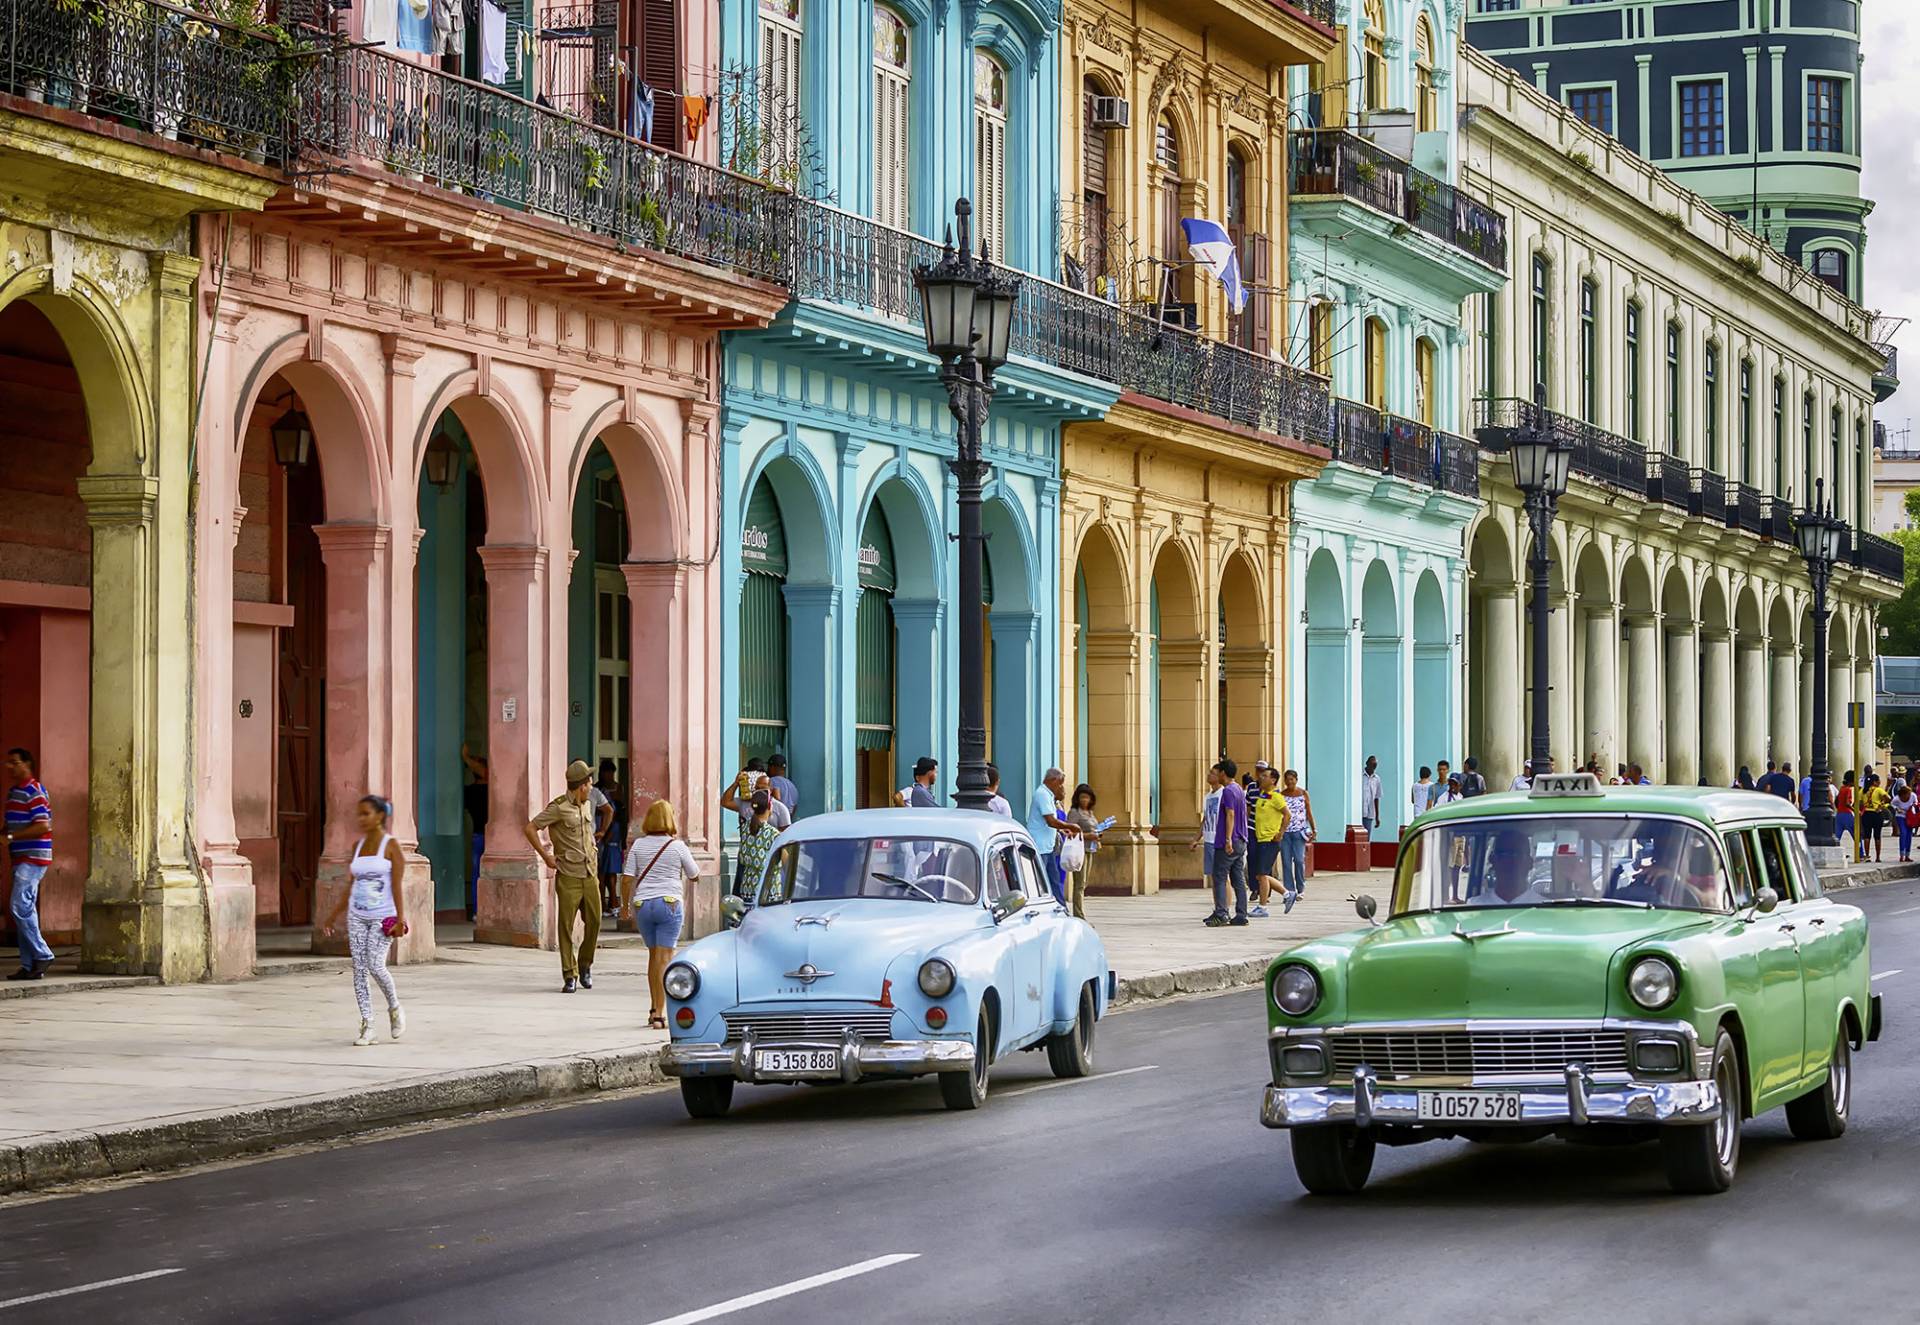 Komar Fototapete "Cuba" von Komar